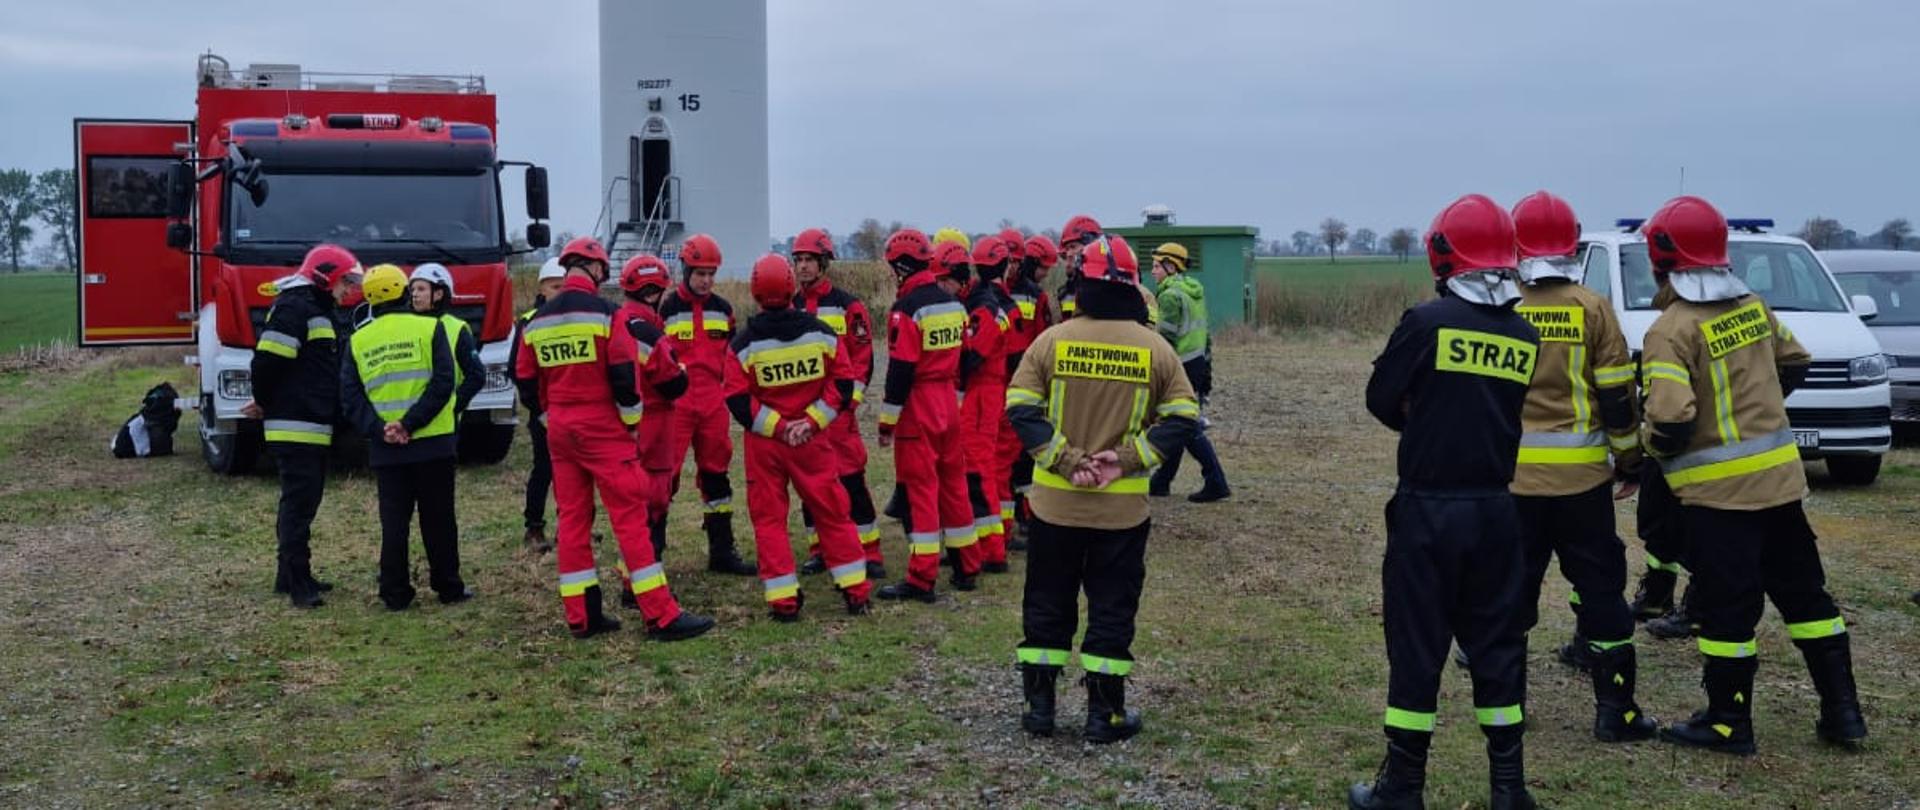 Fotografia przedstawia strażaków podczas zbiórki na ćwiczeniach wysokościowych w miejscowości Nowy Staw.